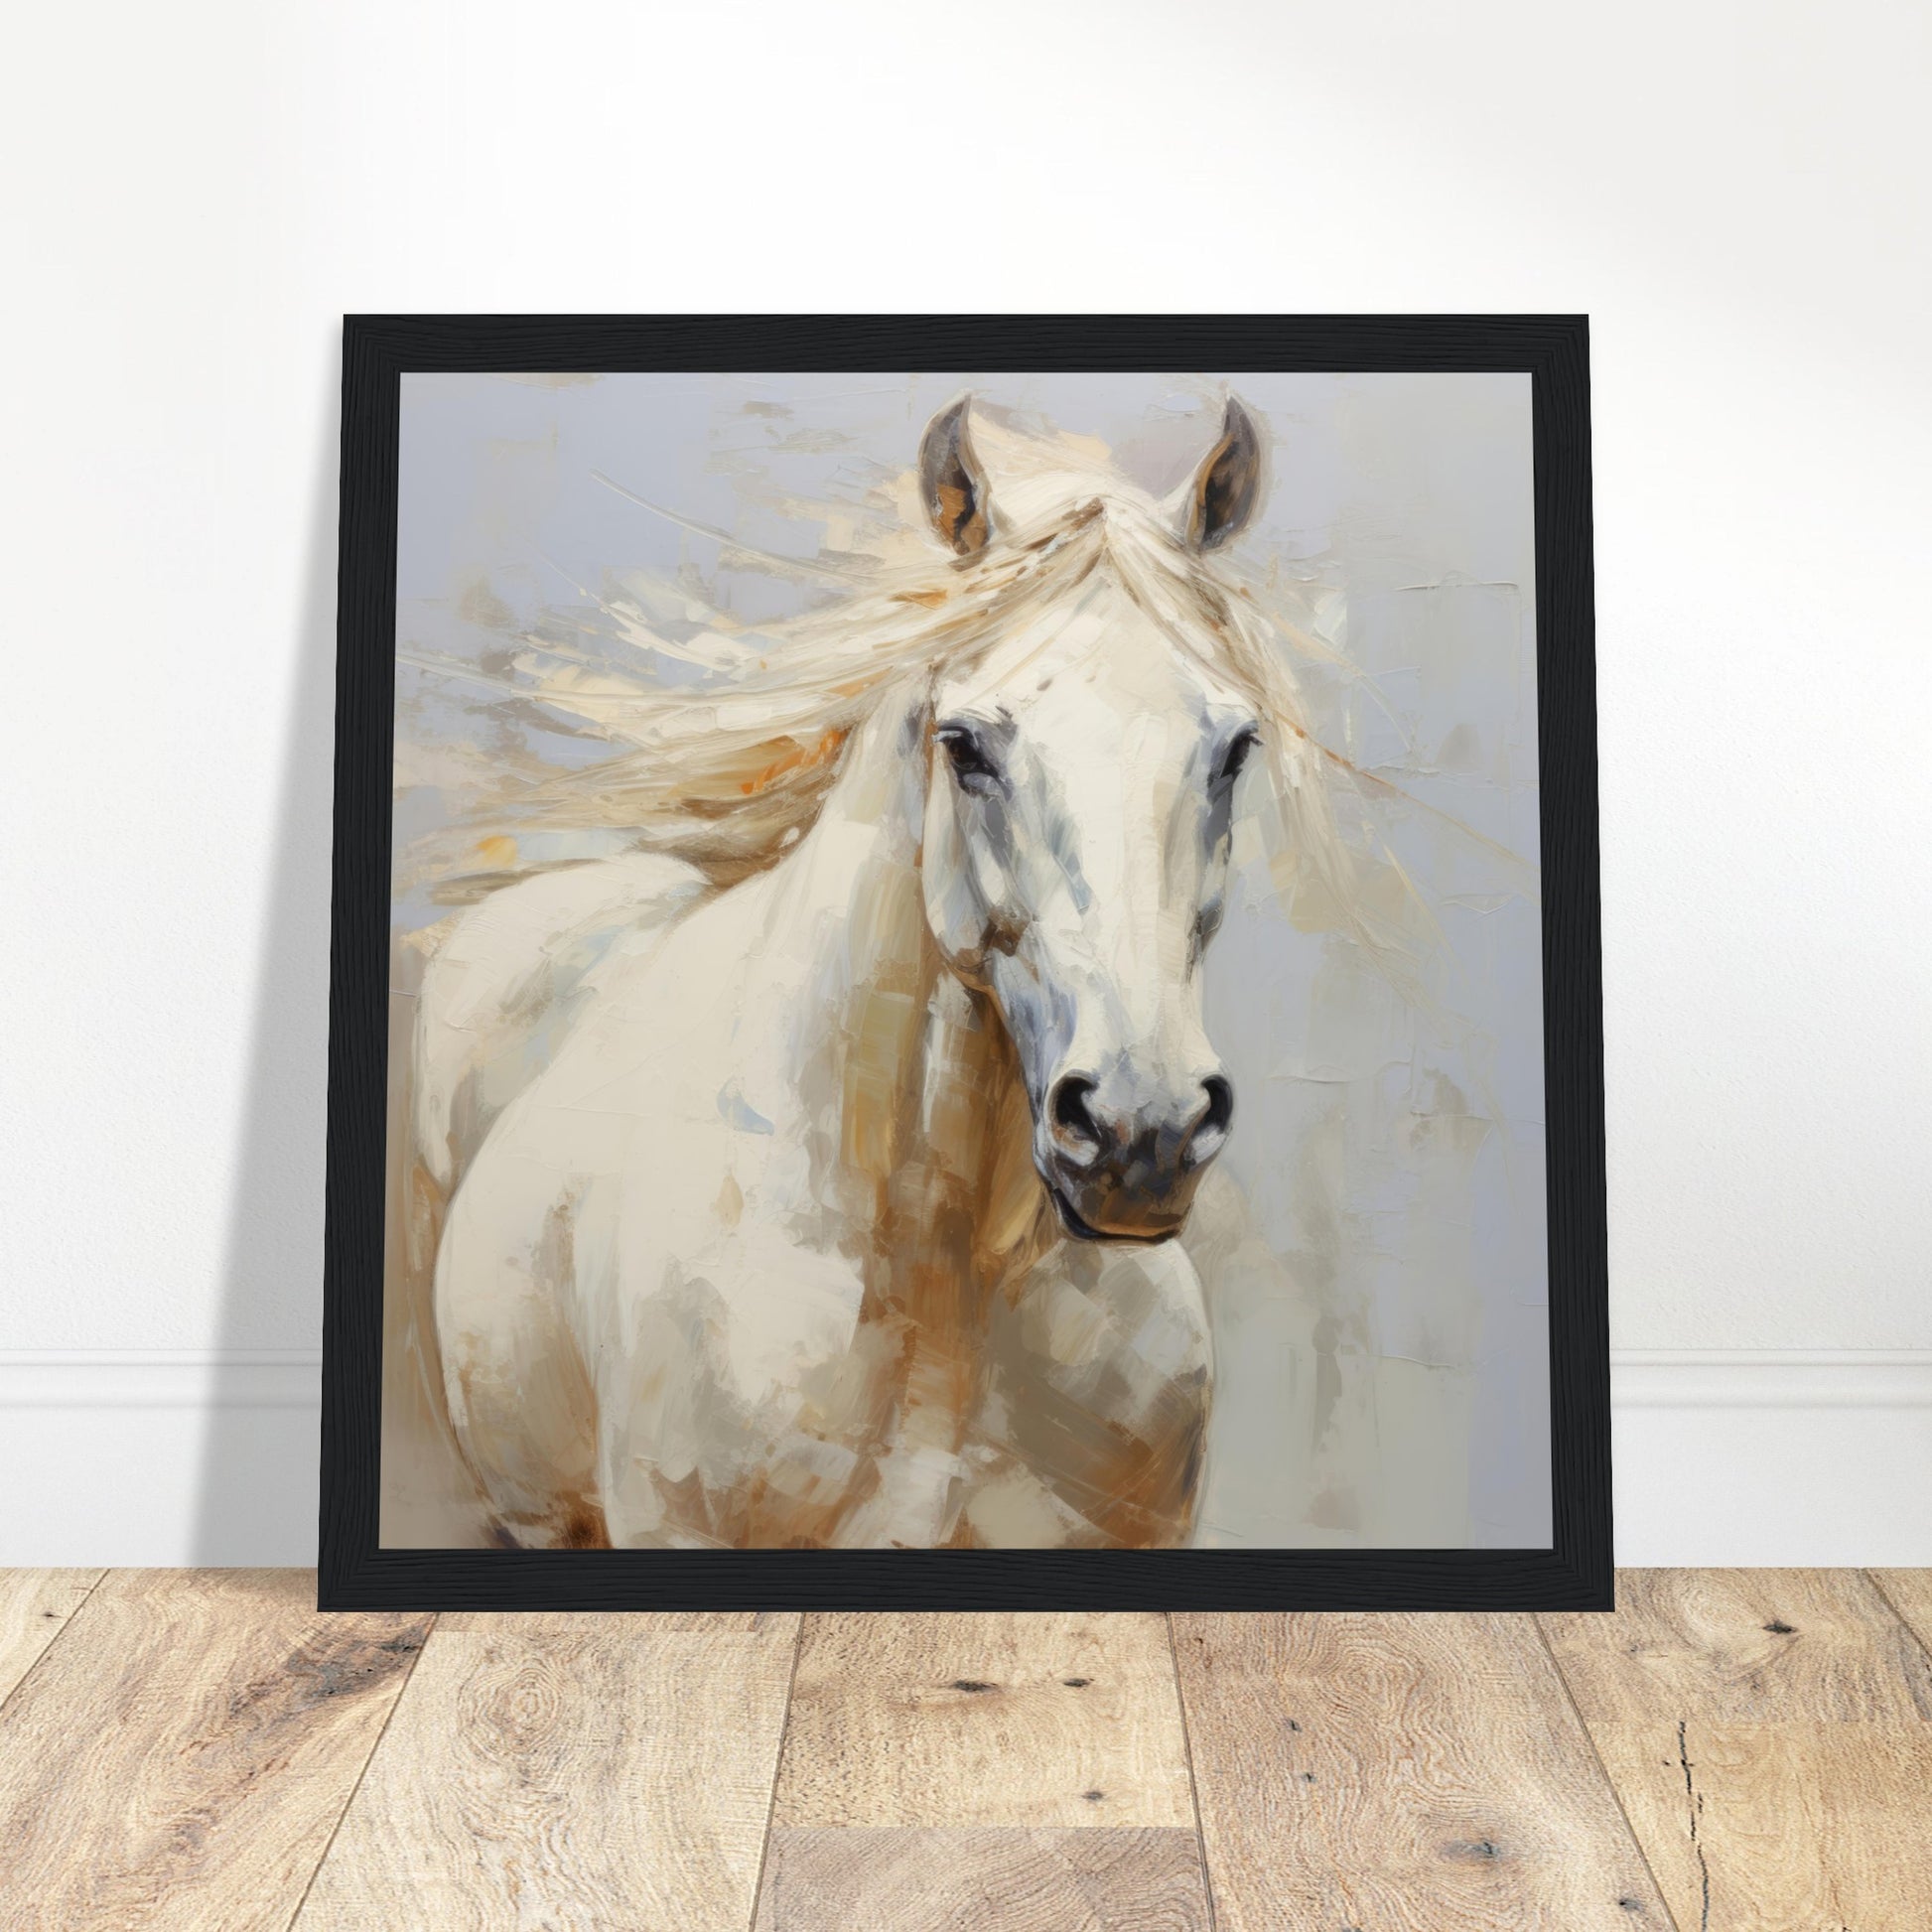 Equine Art #01 - Print Room Ltd White frame 50x50 cm / 20x20"